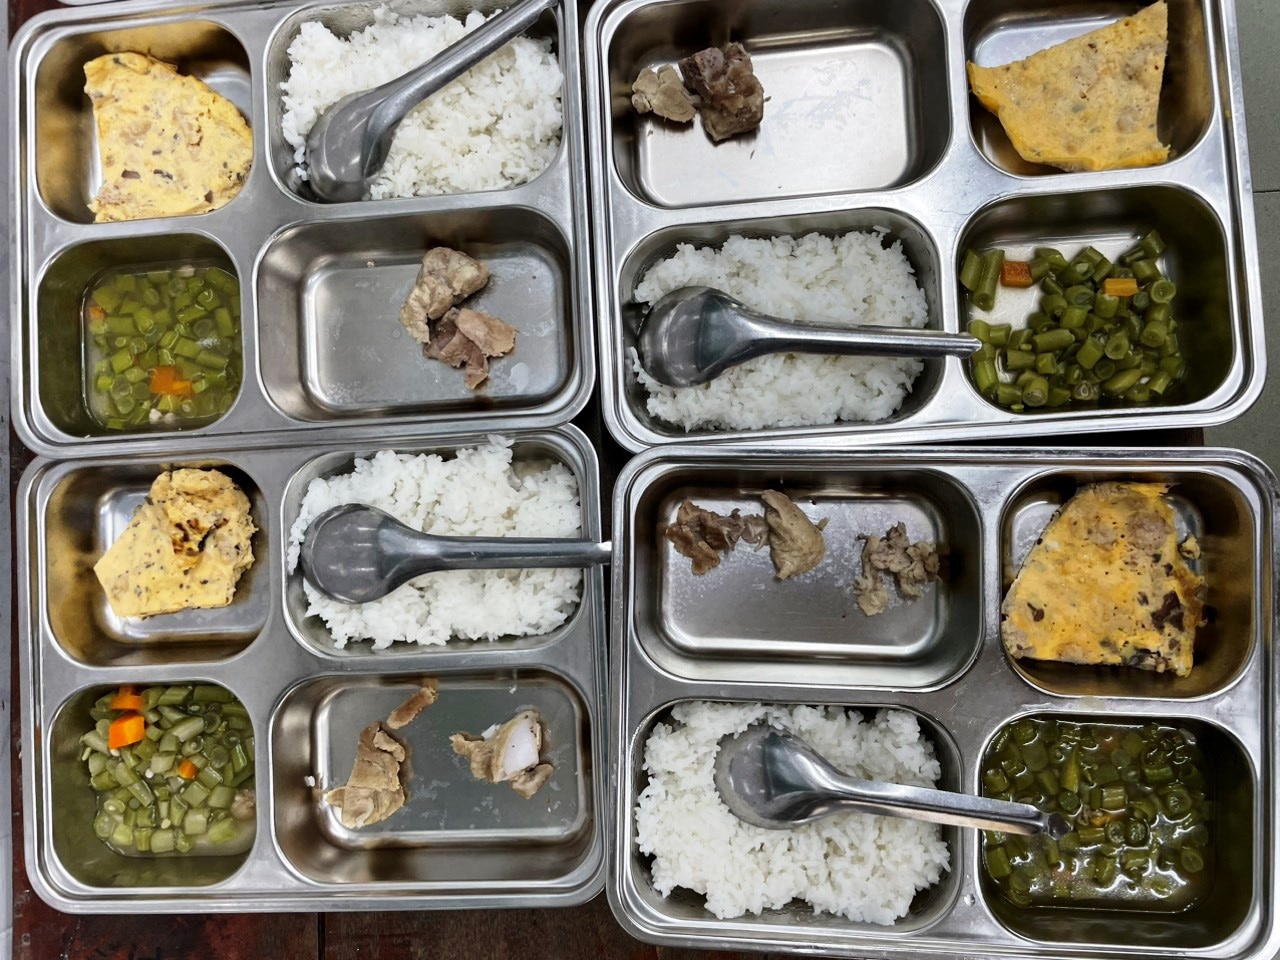 Bữa ăn trưa của học sinh Trường tiểu học Quang Trung (TP Huế) bị phụ huynh phản ánh là không đủ chất dinh dưỡng, thua xa một suất cơm bụi lề đường - Ảnh: Phụ huynh cung cấp